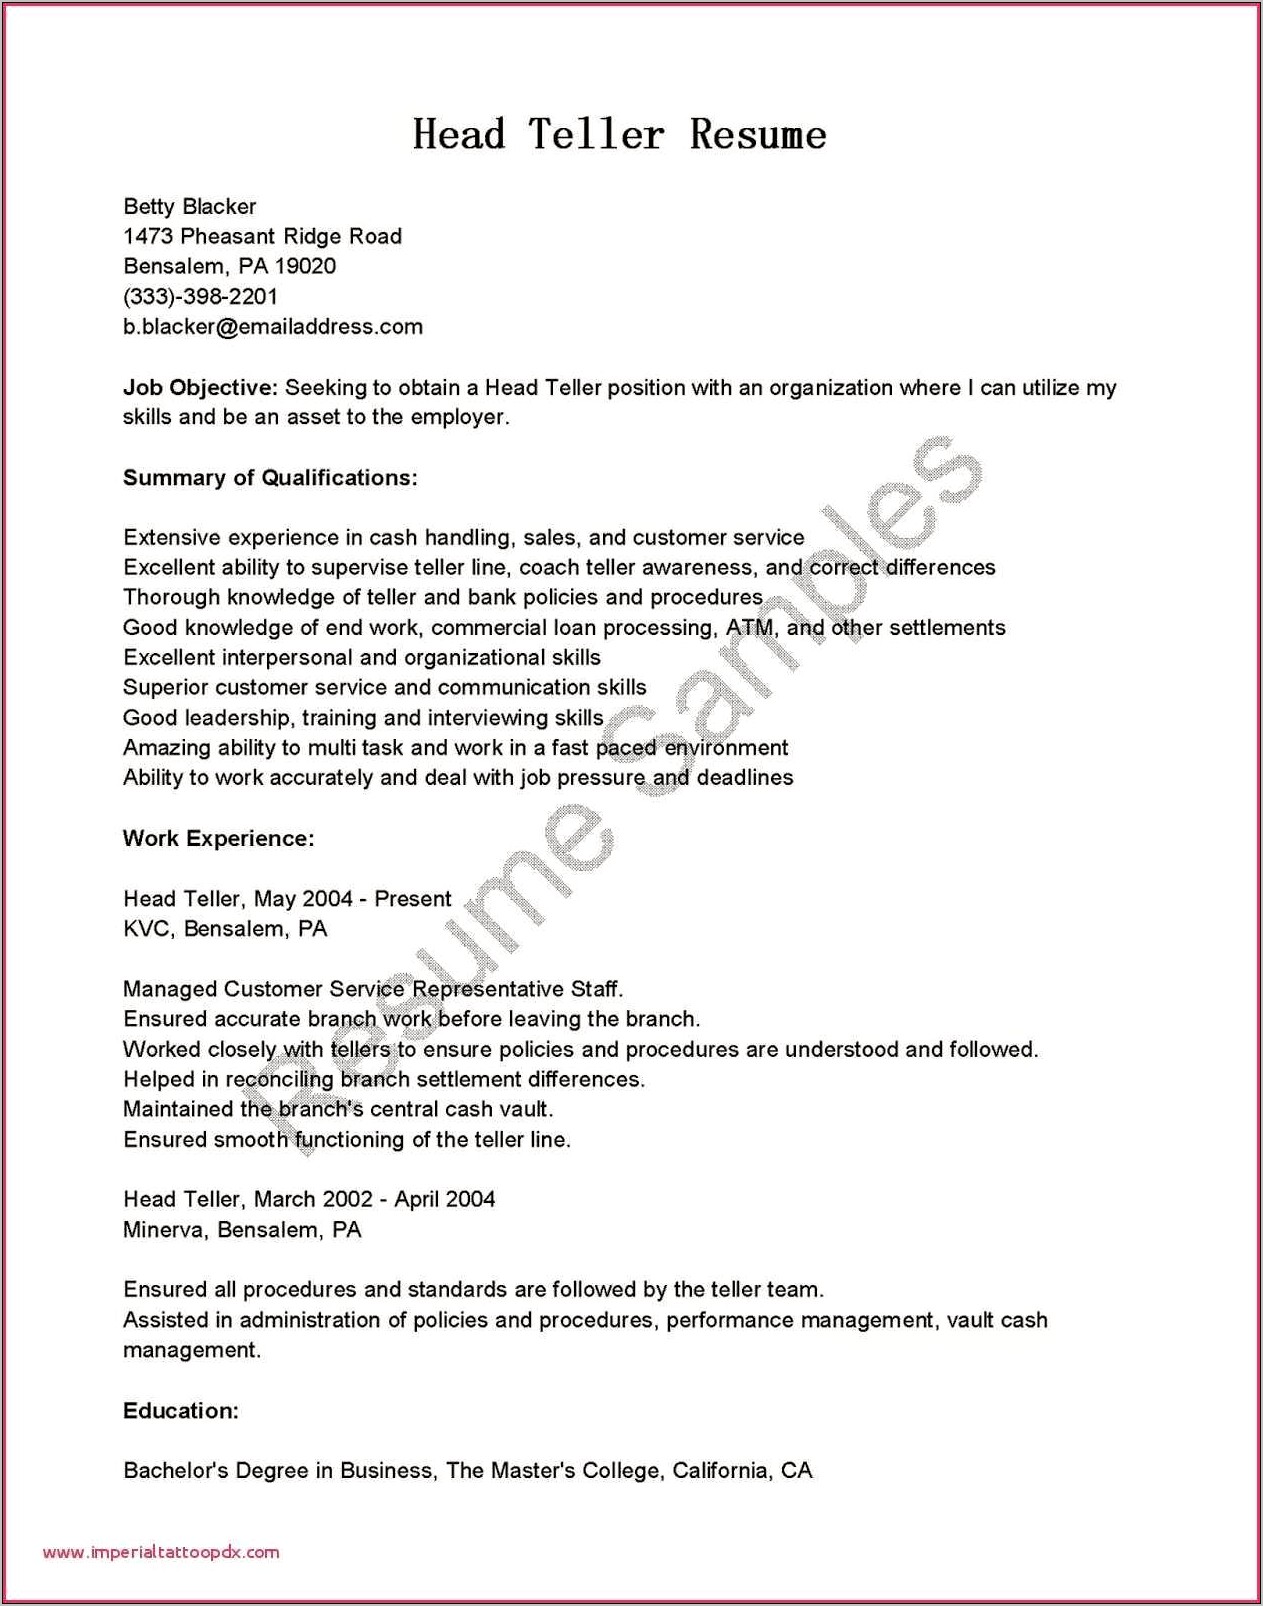 Head Teller Resume Cover Letter Sample